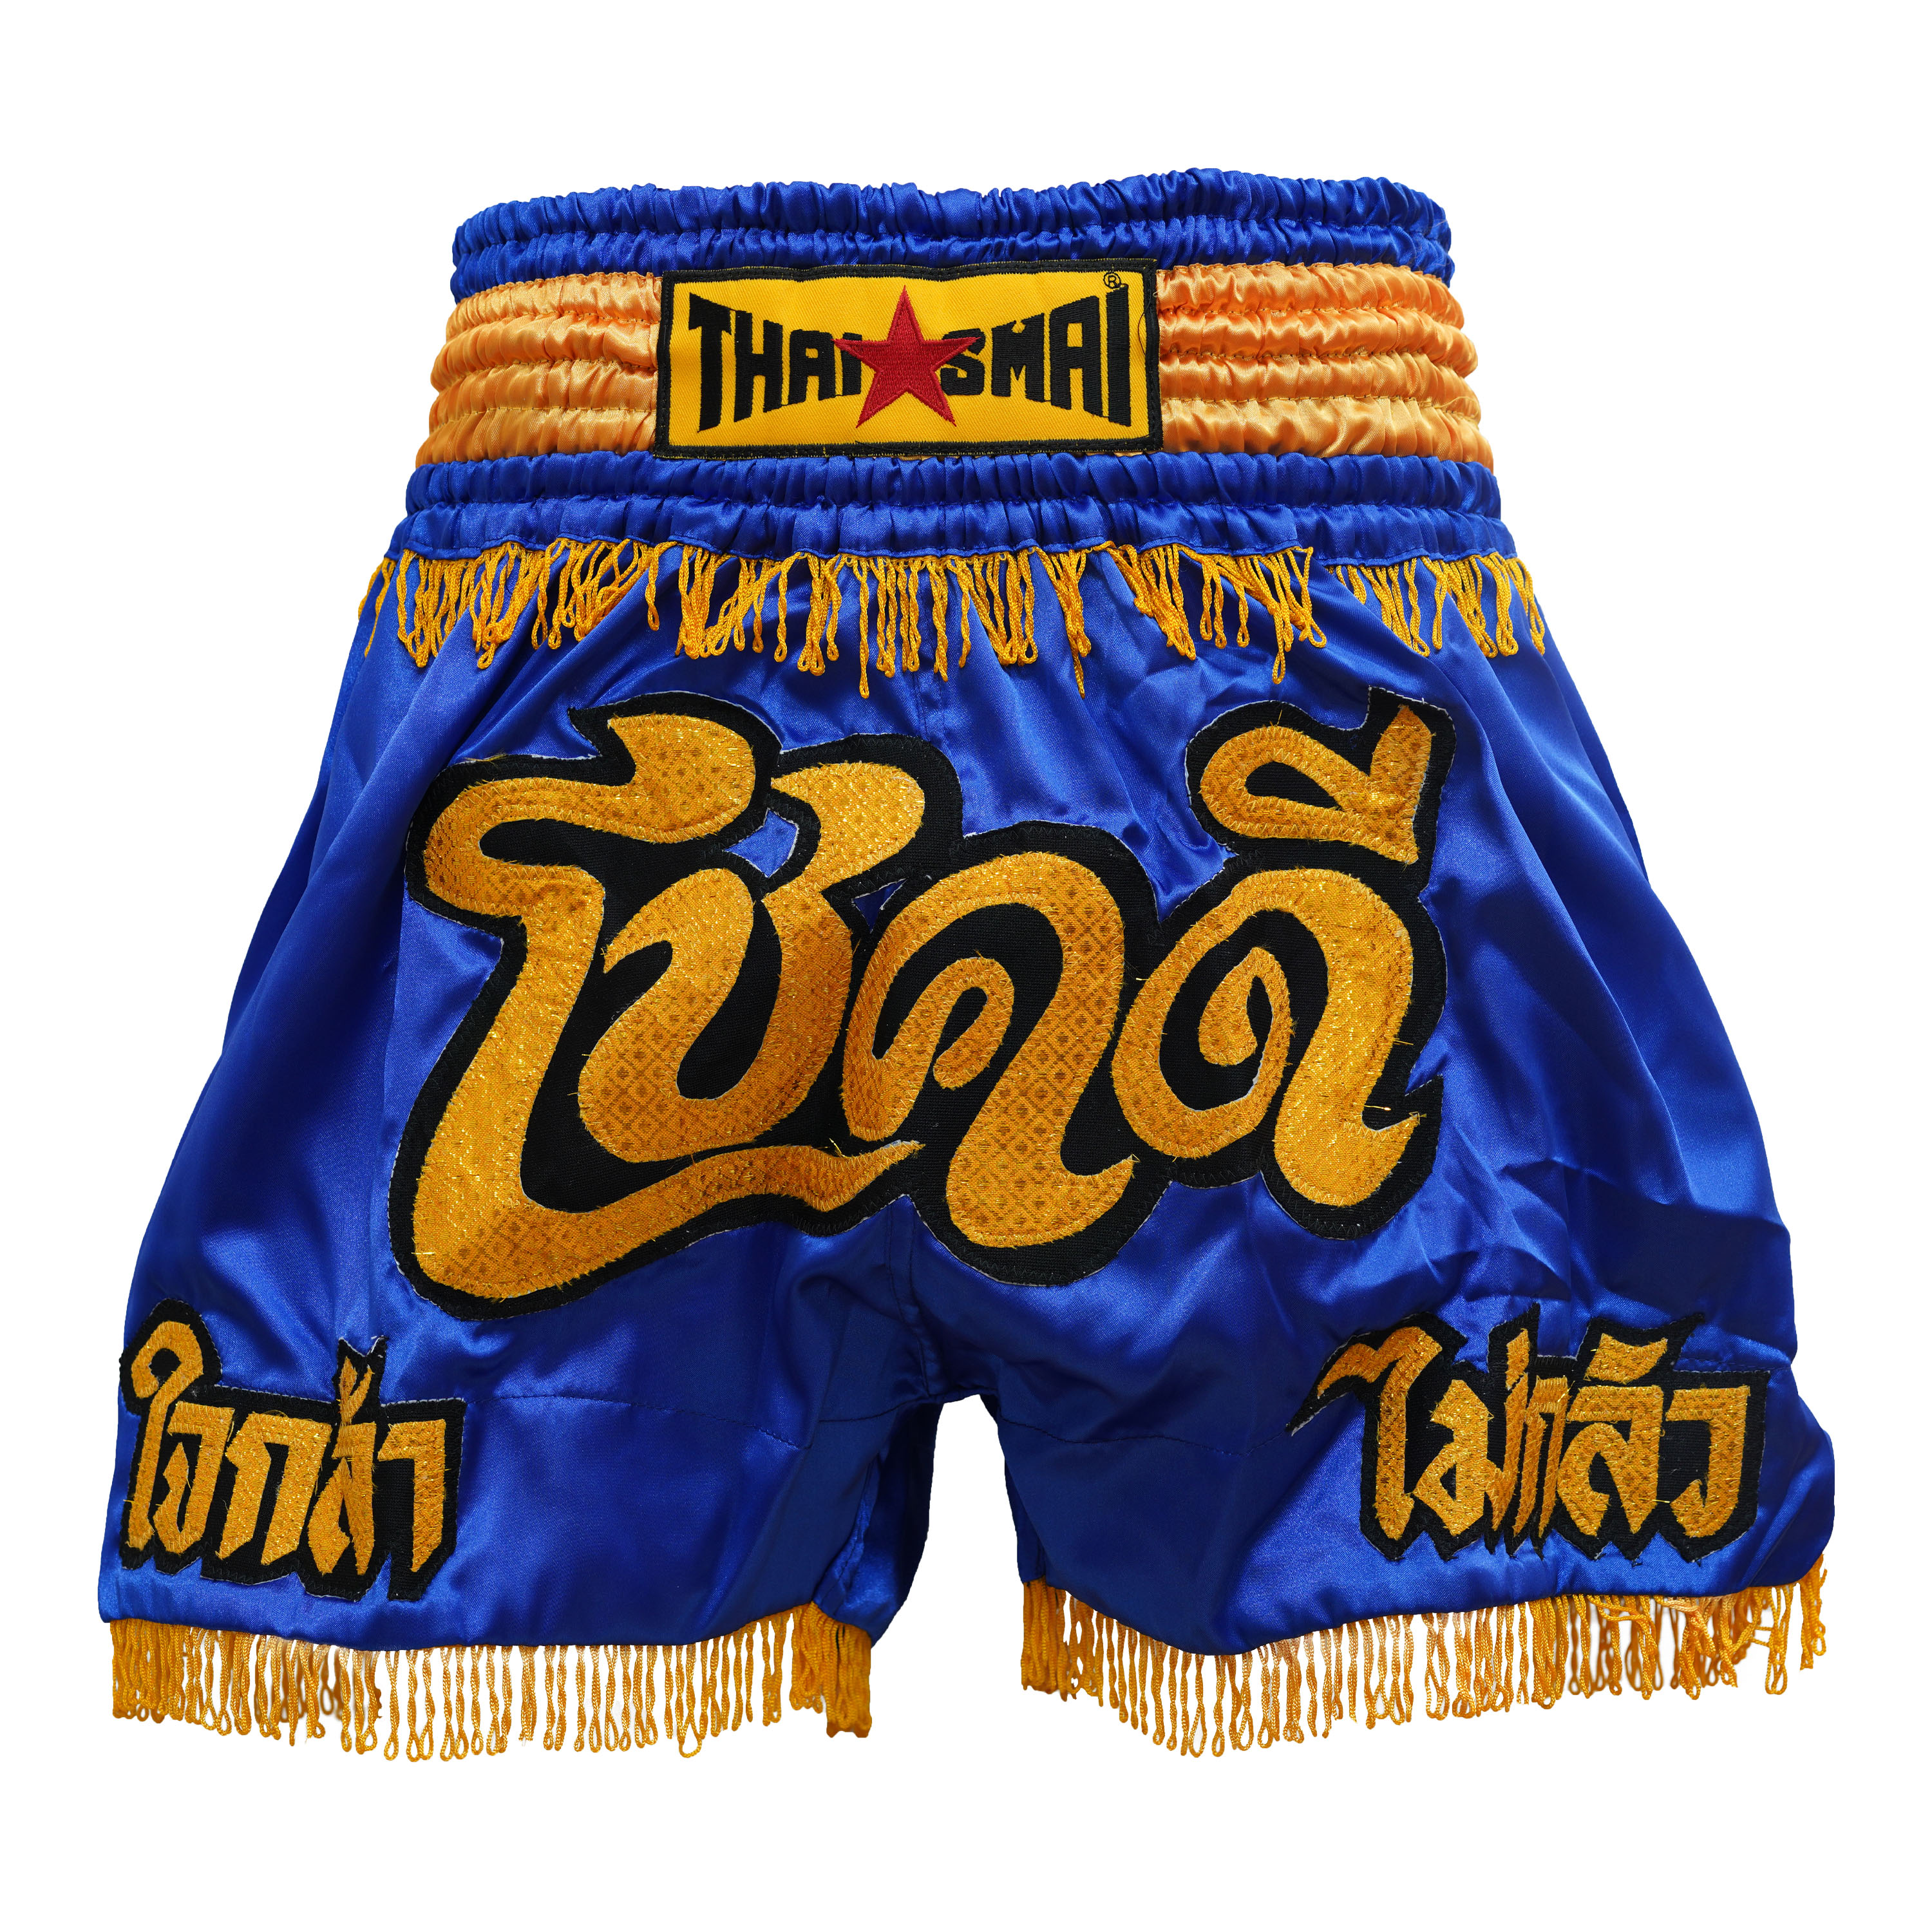 THAISMAI BS-1198 กางเกง มวยไทย ผ้าต่วนน้ำเงิน ปักโชคดี